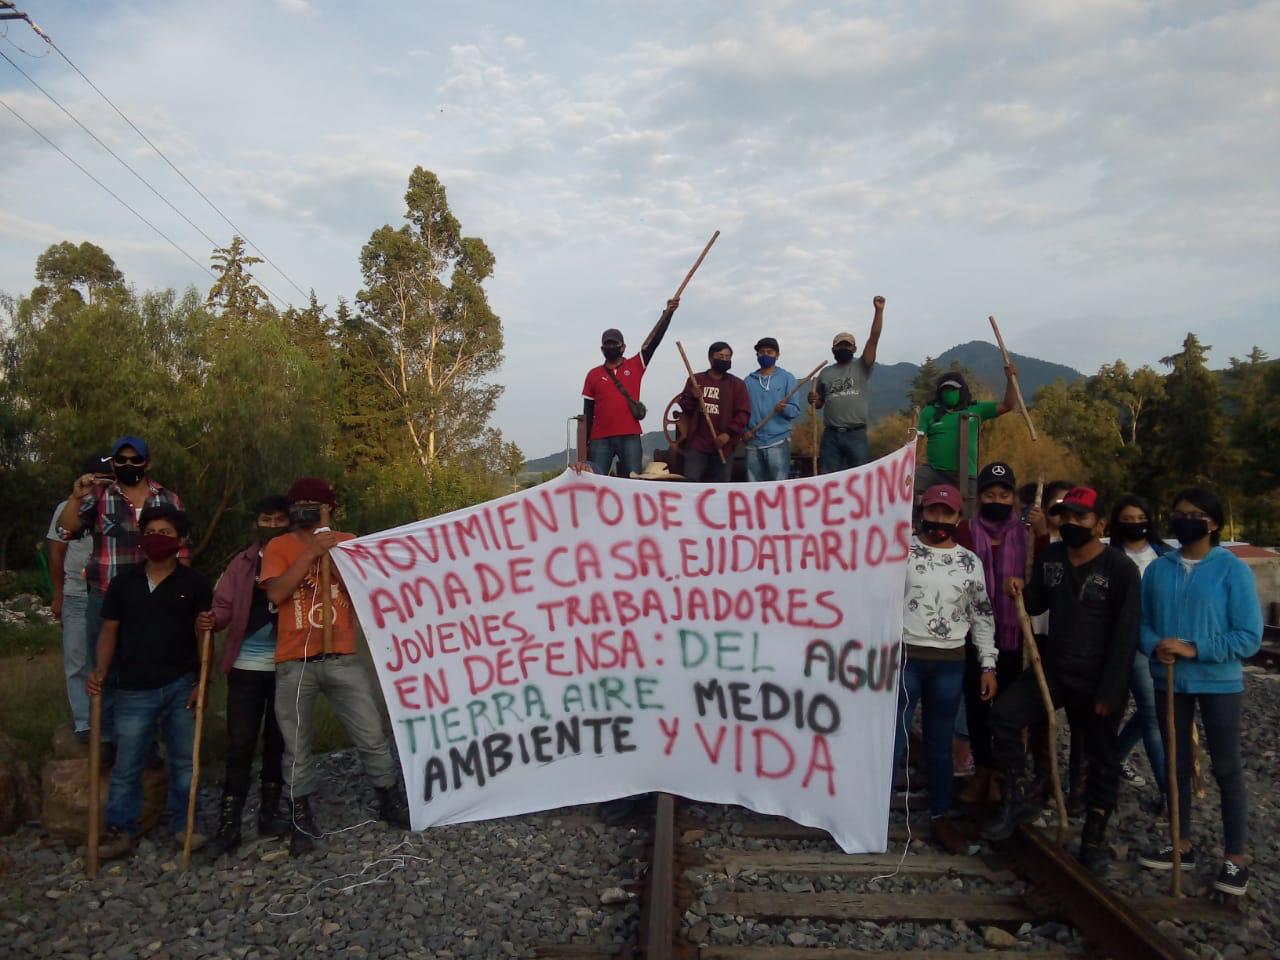 Campesino acusan a empresas extranjeras de dejarlos sin agua; toman vías férreas